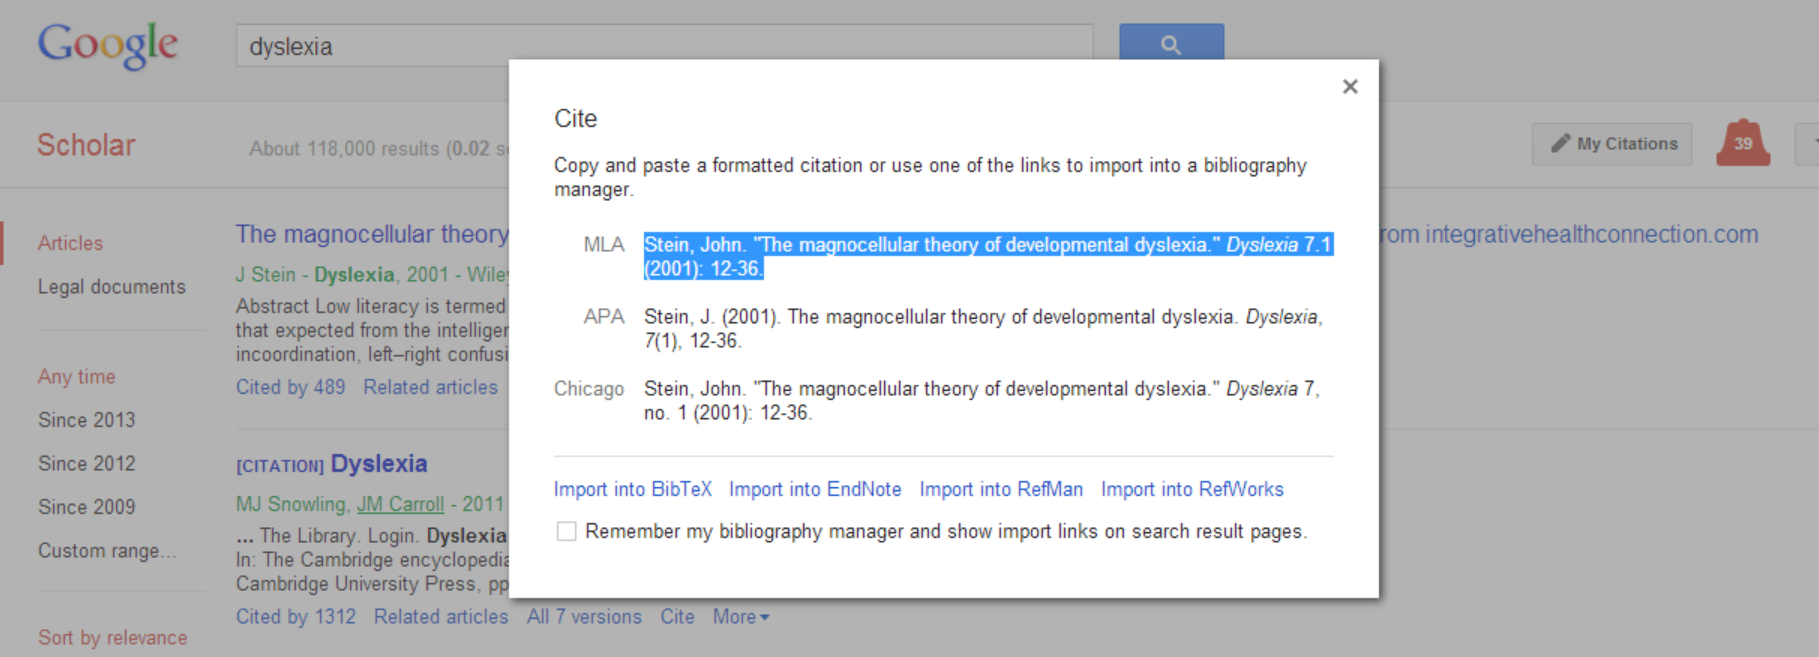 google scholar citation